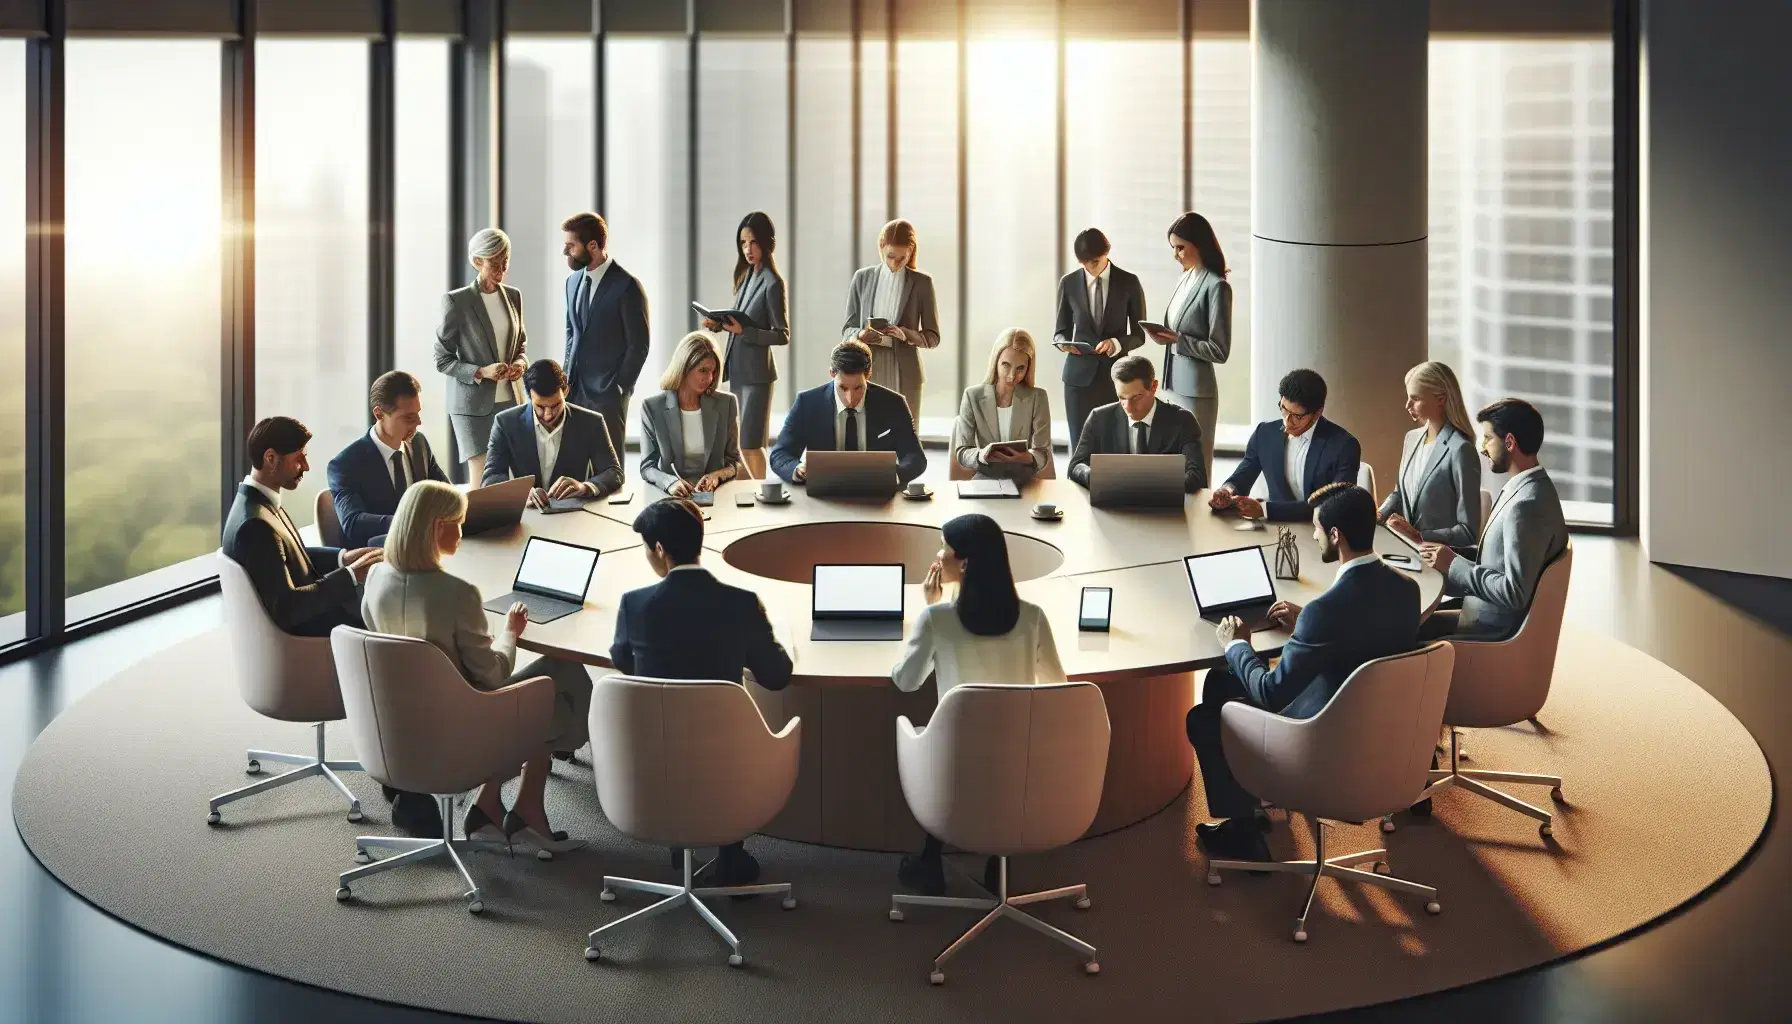 Grupo diverso de profesionales en reunión de trabajo con laptops y móviles sobre mesa ovalada en oficina iluminada naturalmente.